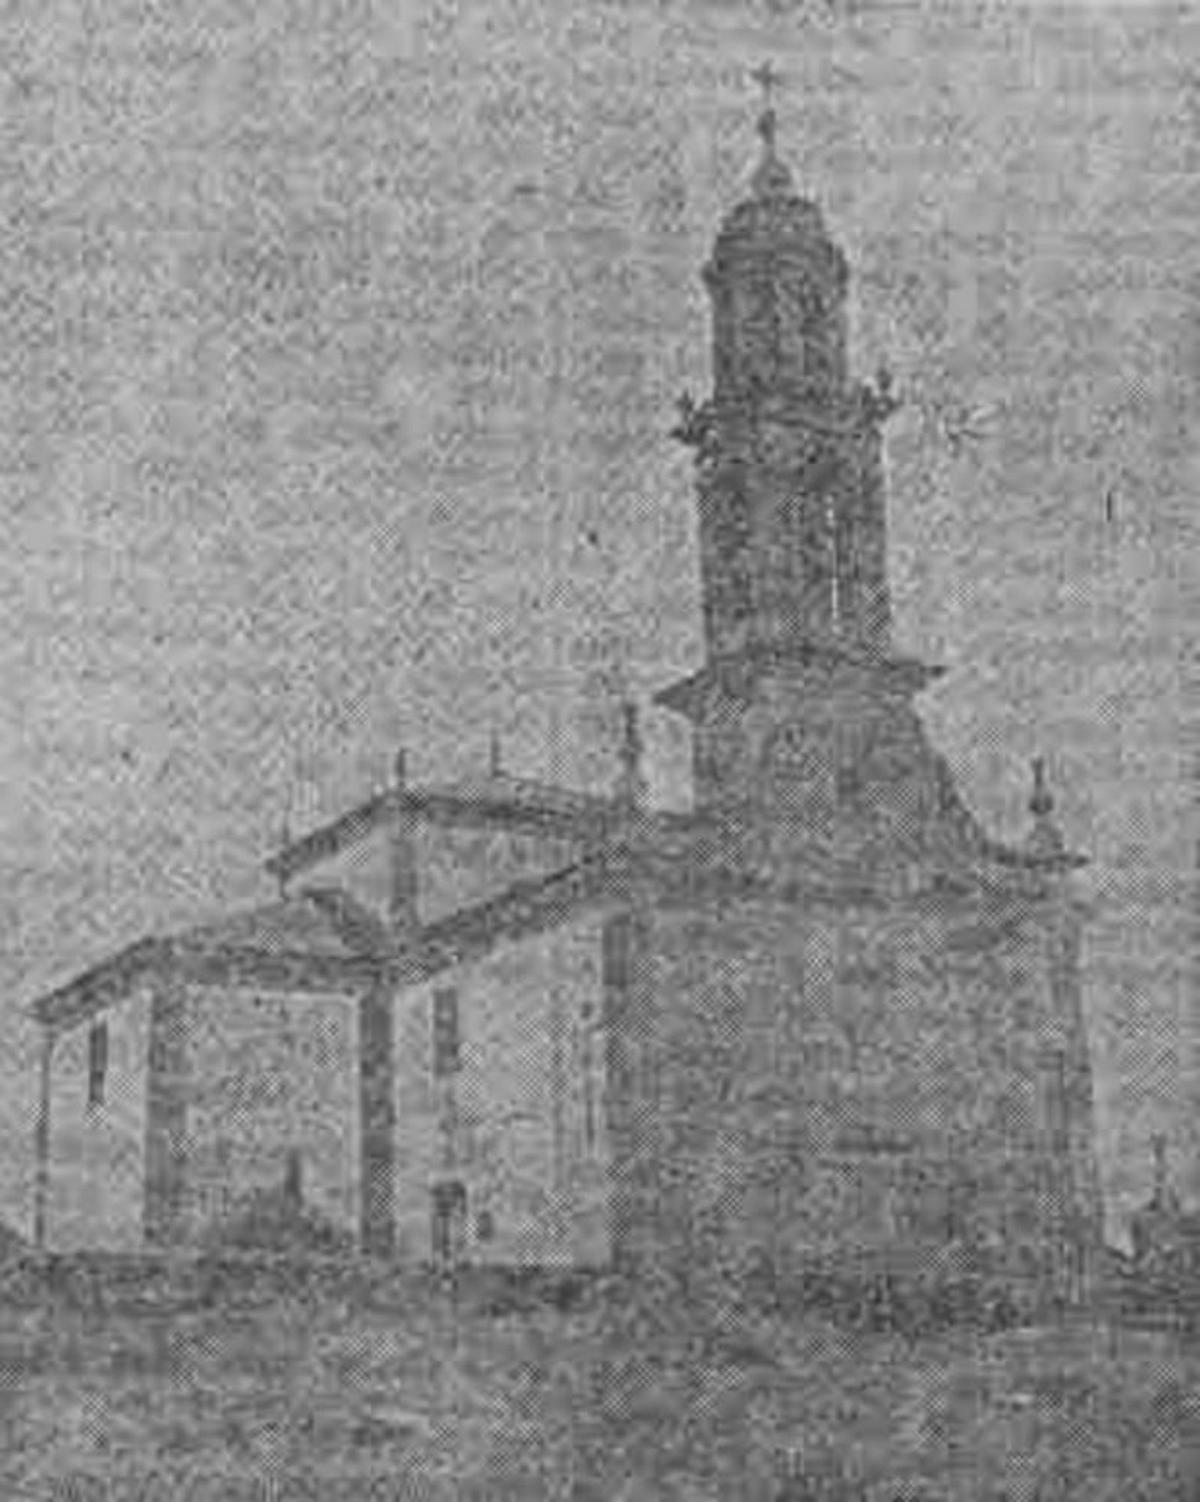 La iglesia de Silleda cumple 170 años